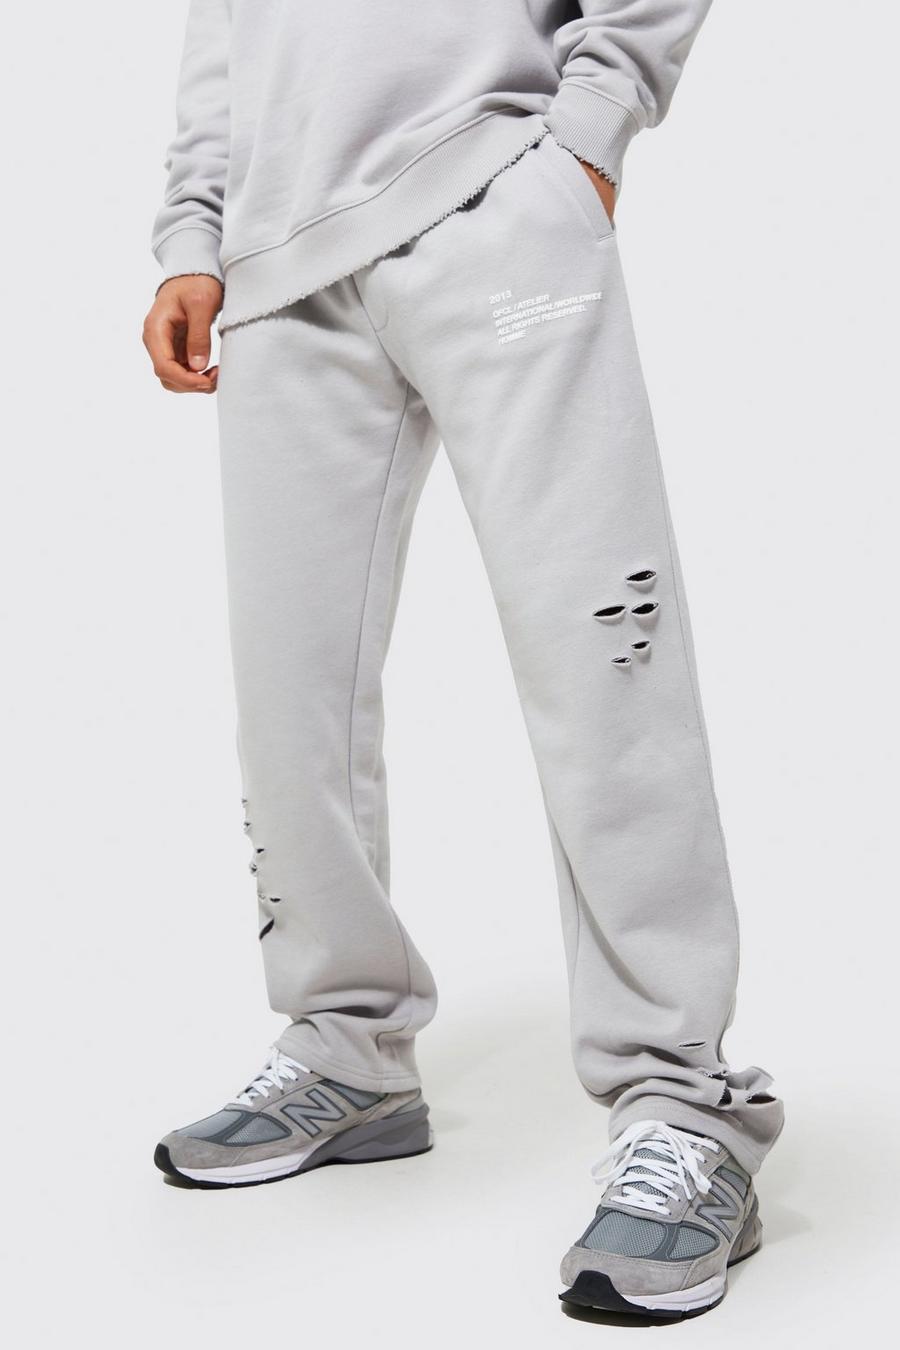 Pantaloni tuta a gamba ampia Man oversize effetto smagliato, Grey grigio